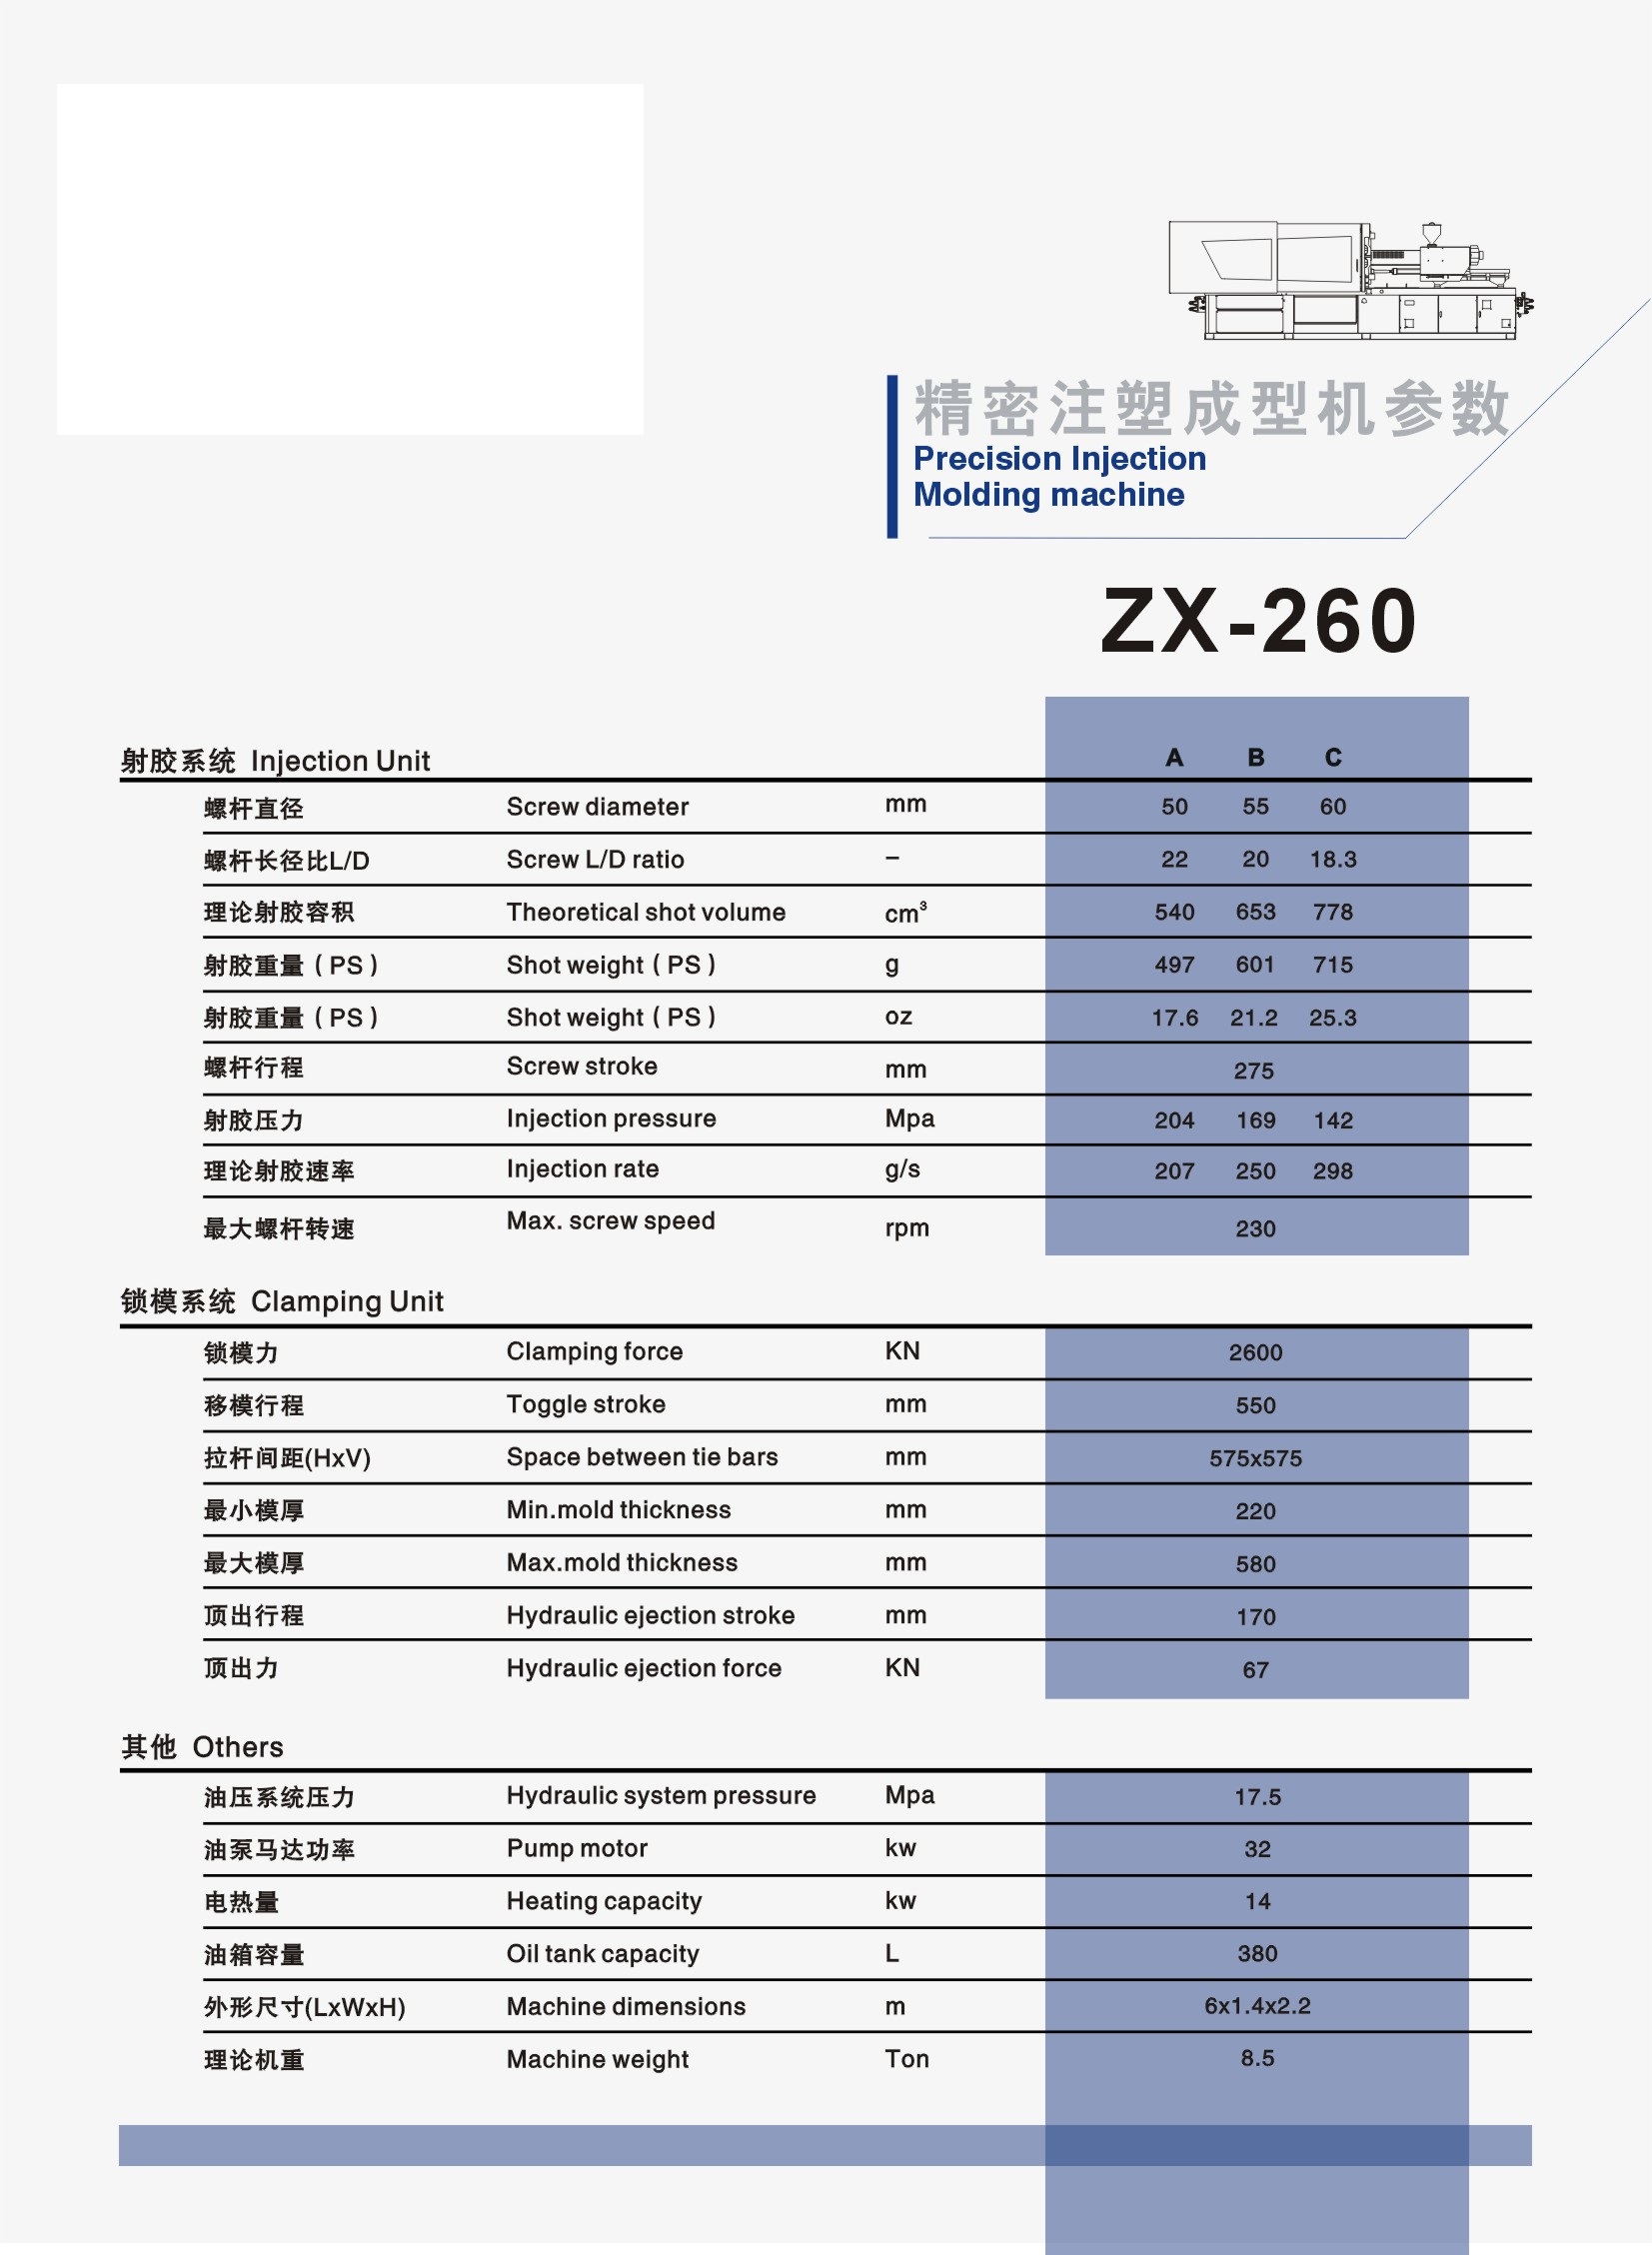 ZX-260.jpg